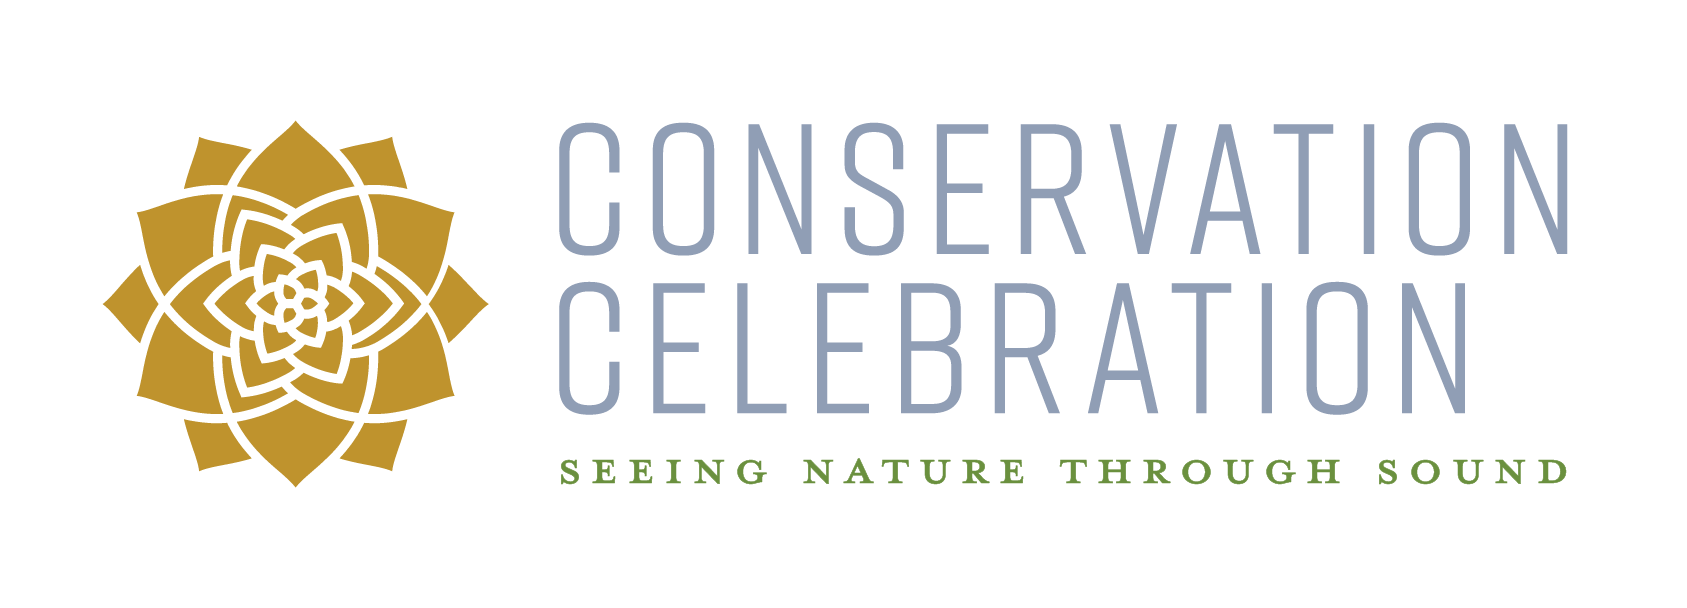 Conservation Celebration